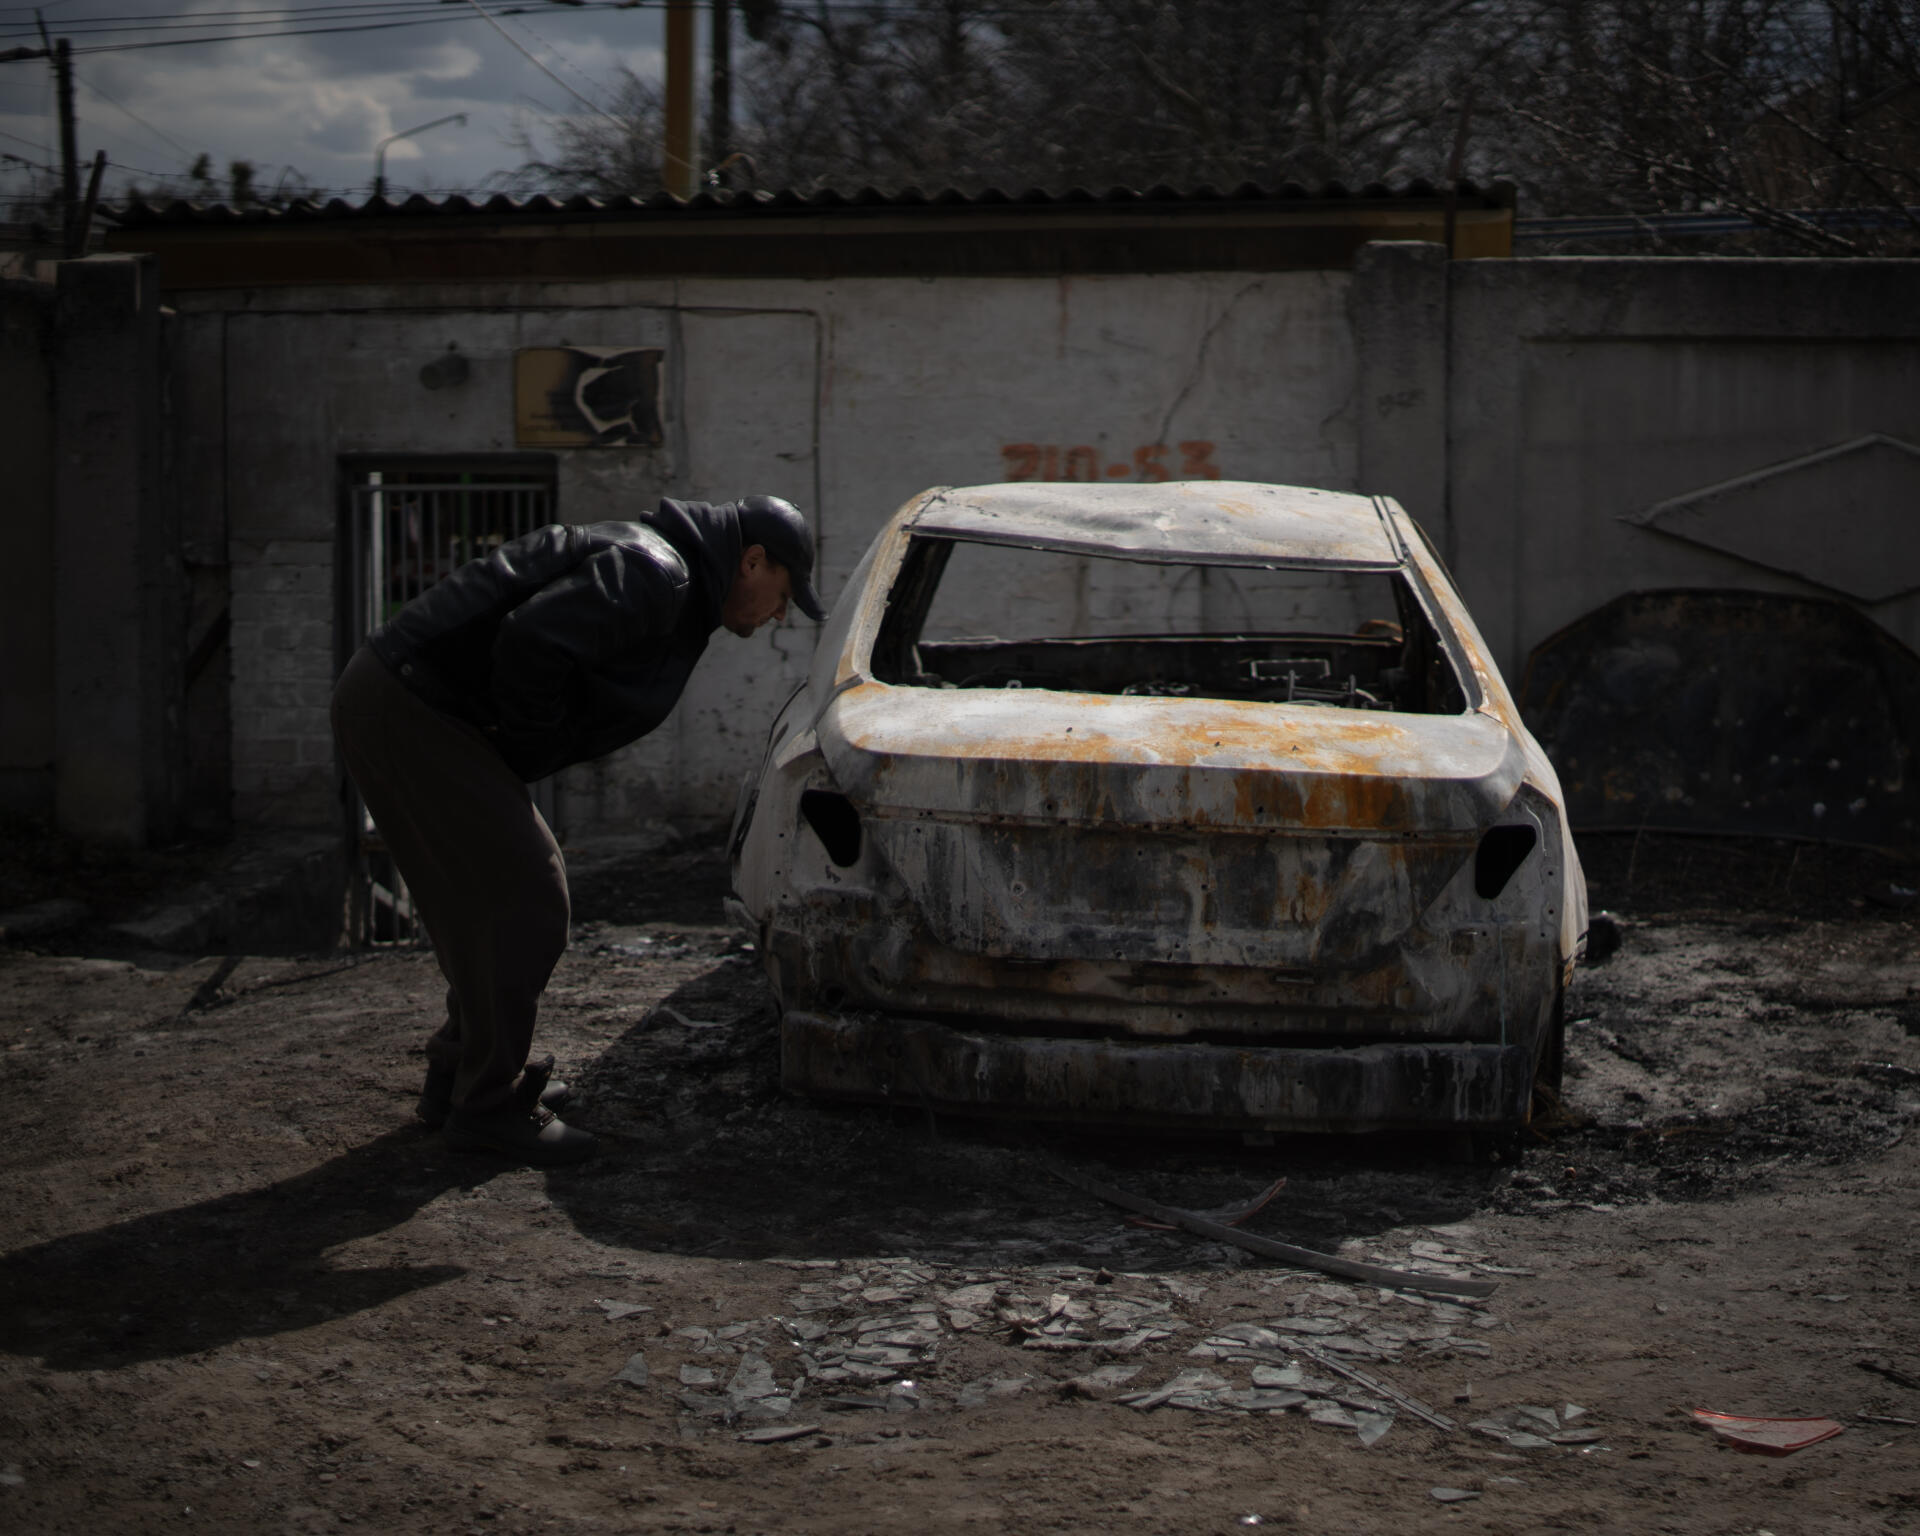 Un homme observe une voiture brulée lors d'un bombardement survenu le 3 avril à Sloboda, faisant 7 morts. Kharkiv, en Ukraine, le 3 avril 2022.